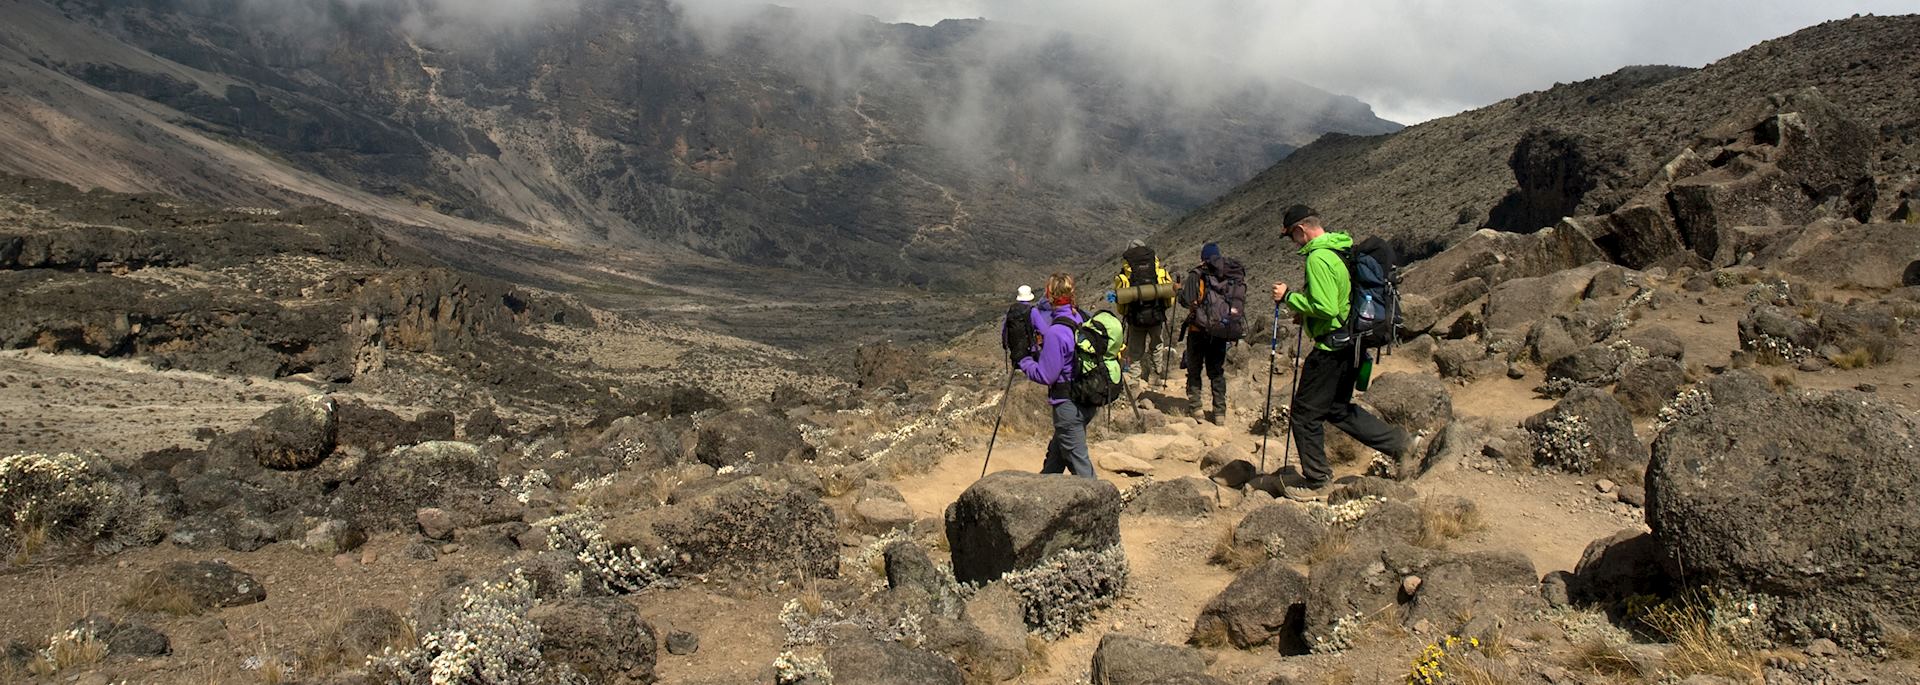 Hiking Mount Kilimanjaro